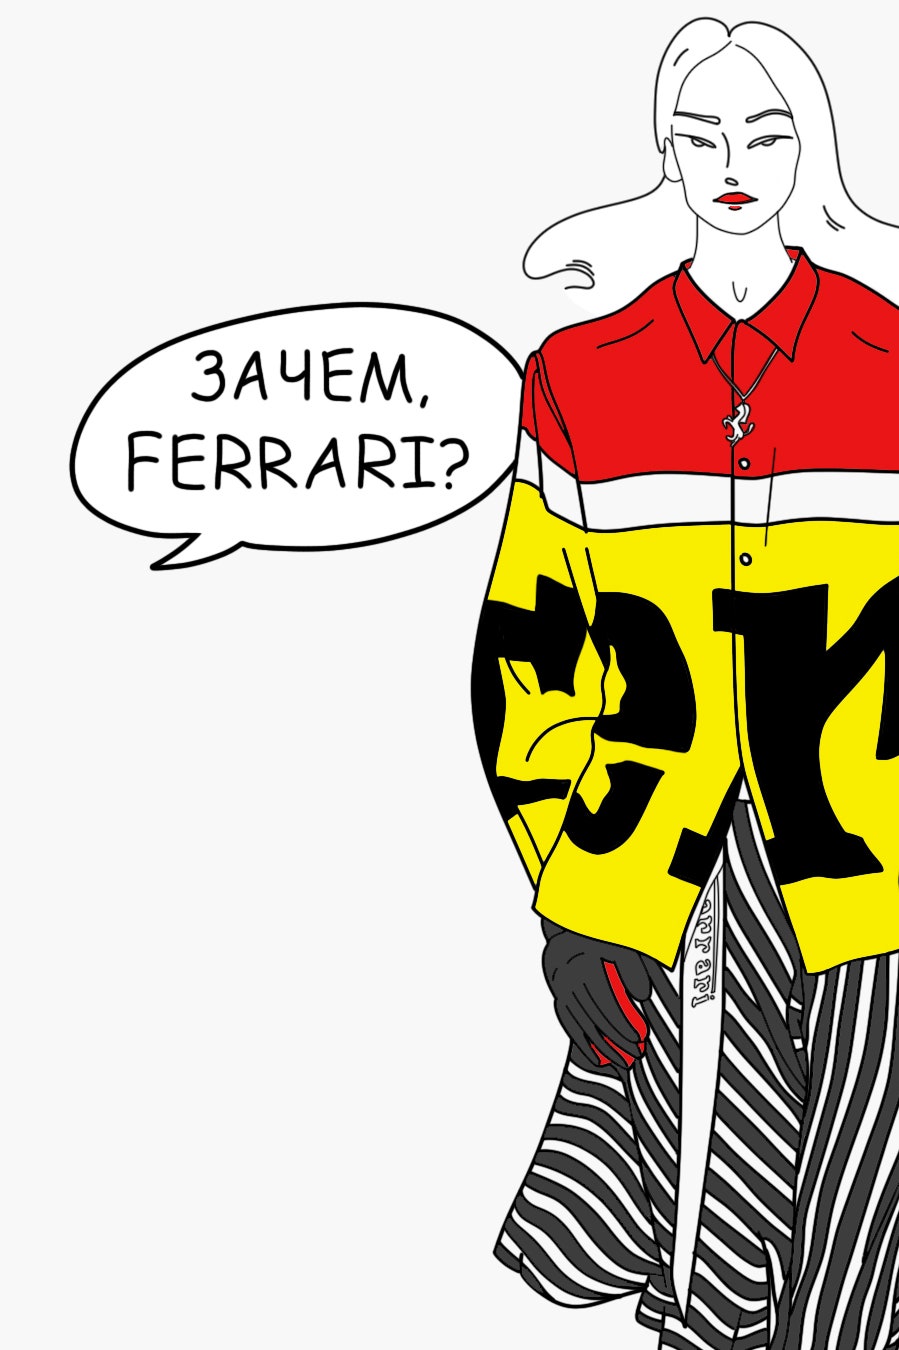 Ferrari показали дебютную коллекцию одежды. За что все ее ругают?